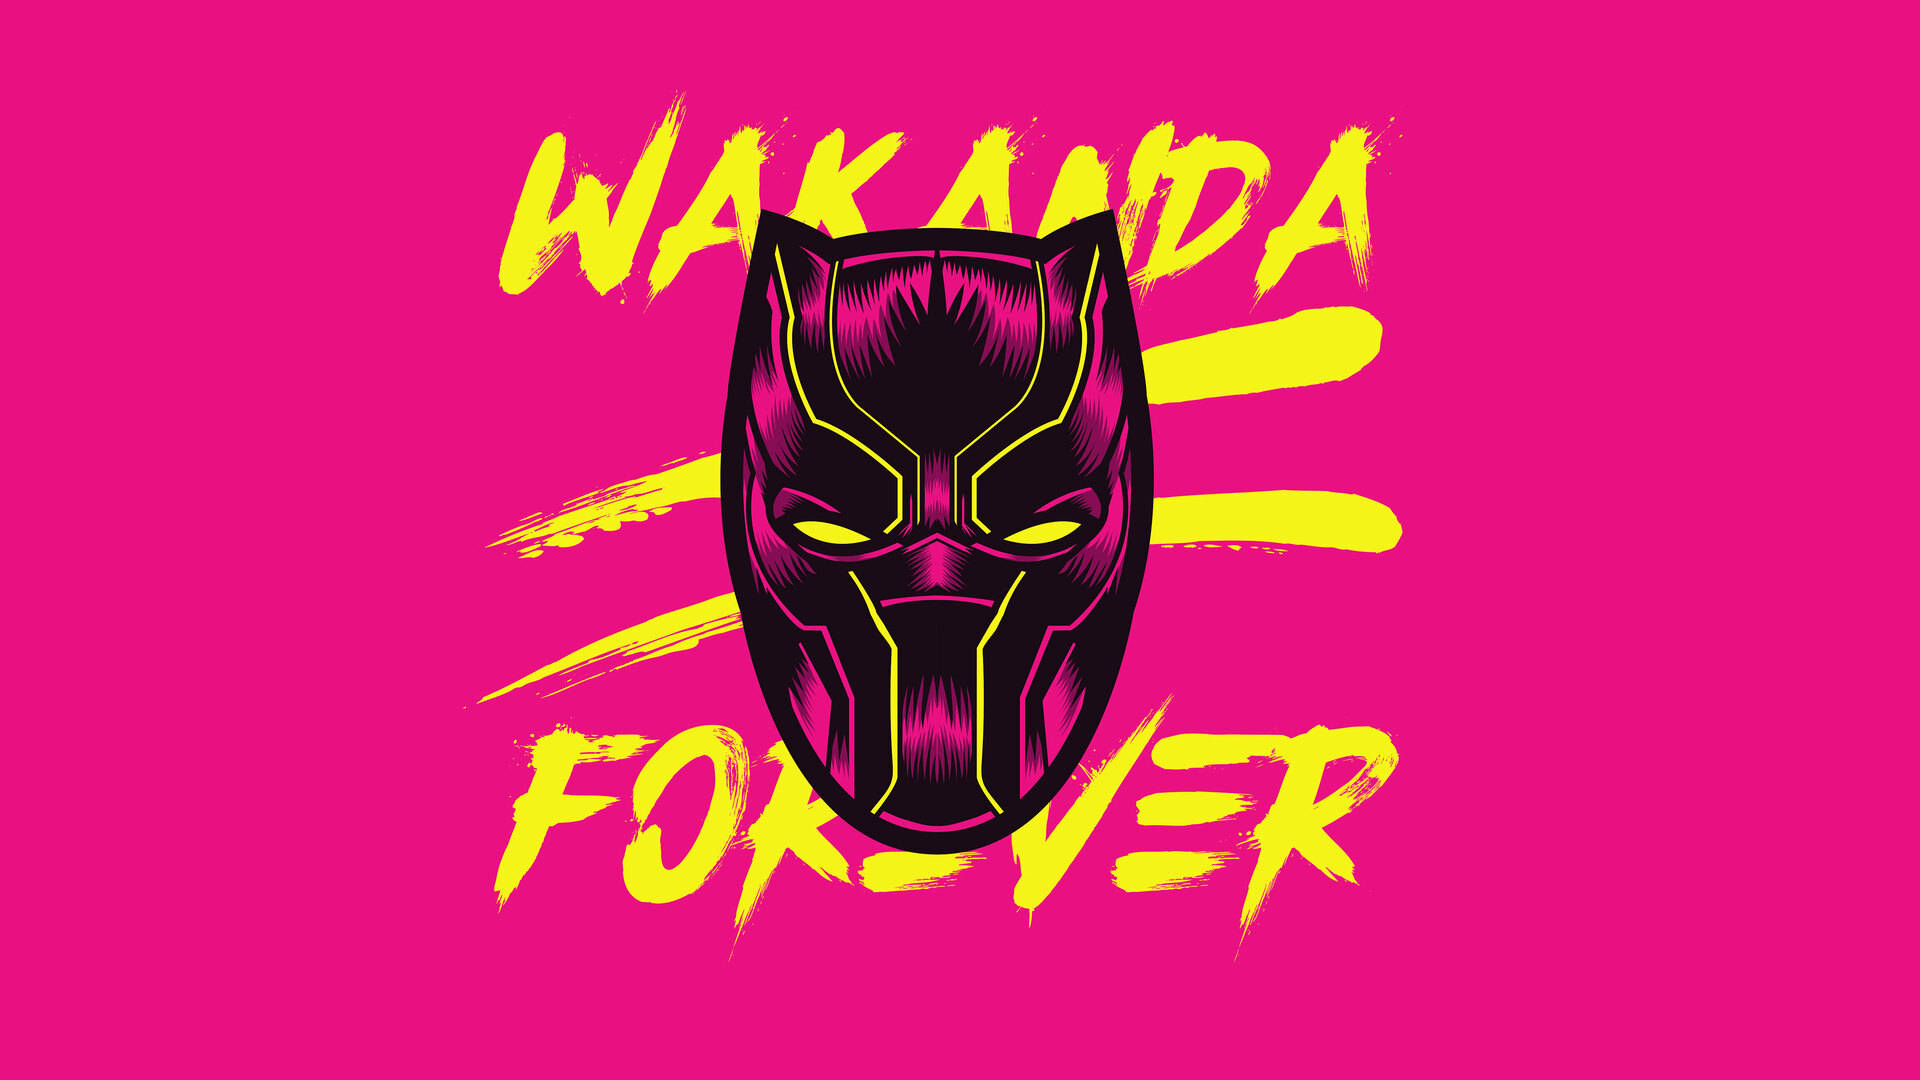 Blackpanther Wakanda Para Siempre. Fondo de pantalla